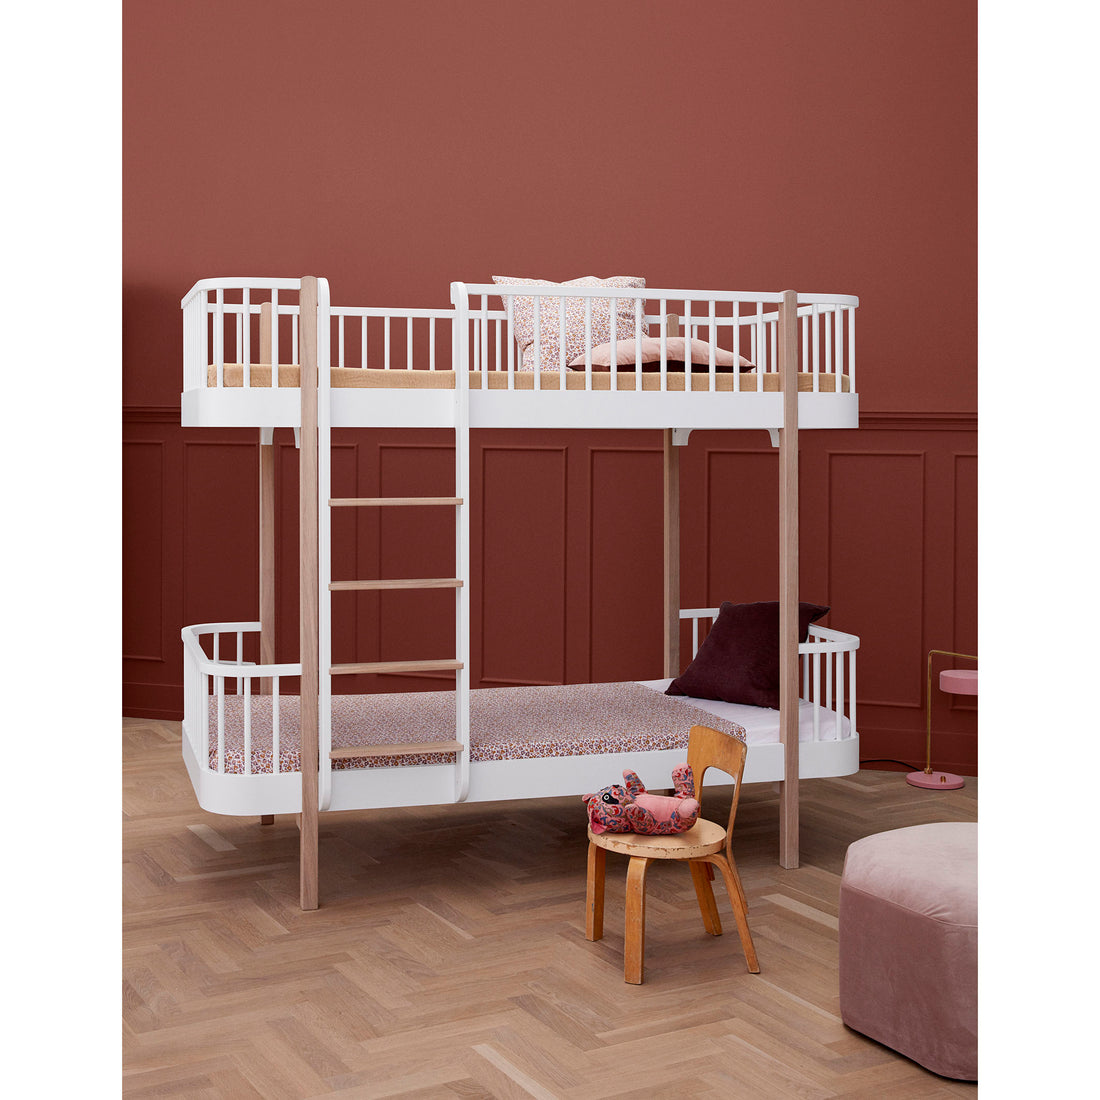 oliver-furniture-wood-bunk-bed-ladder-front-white- (6)